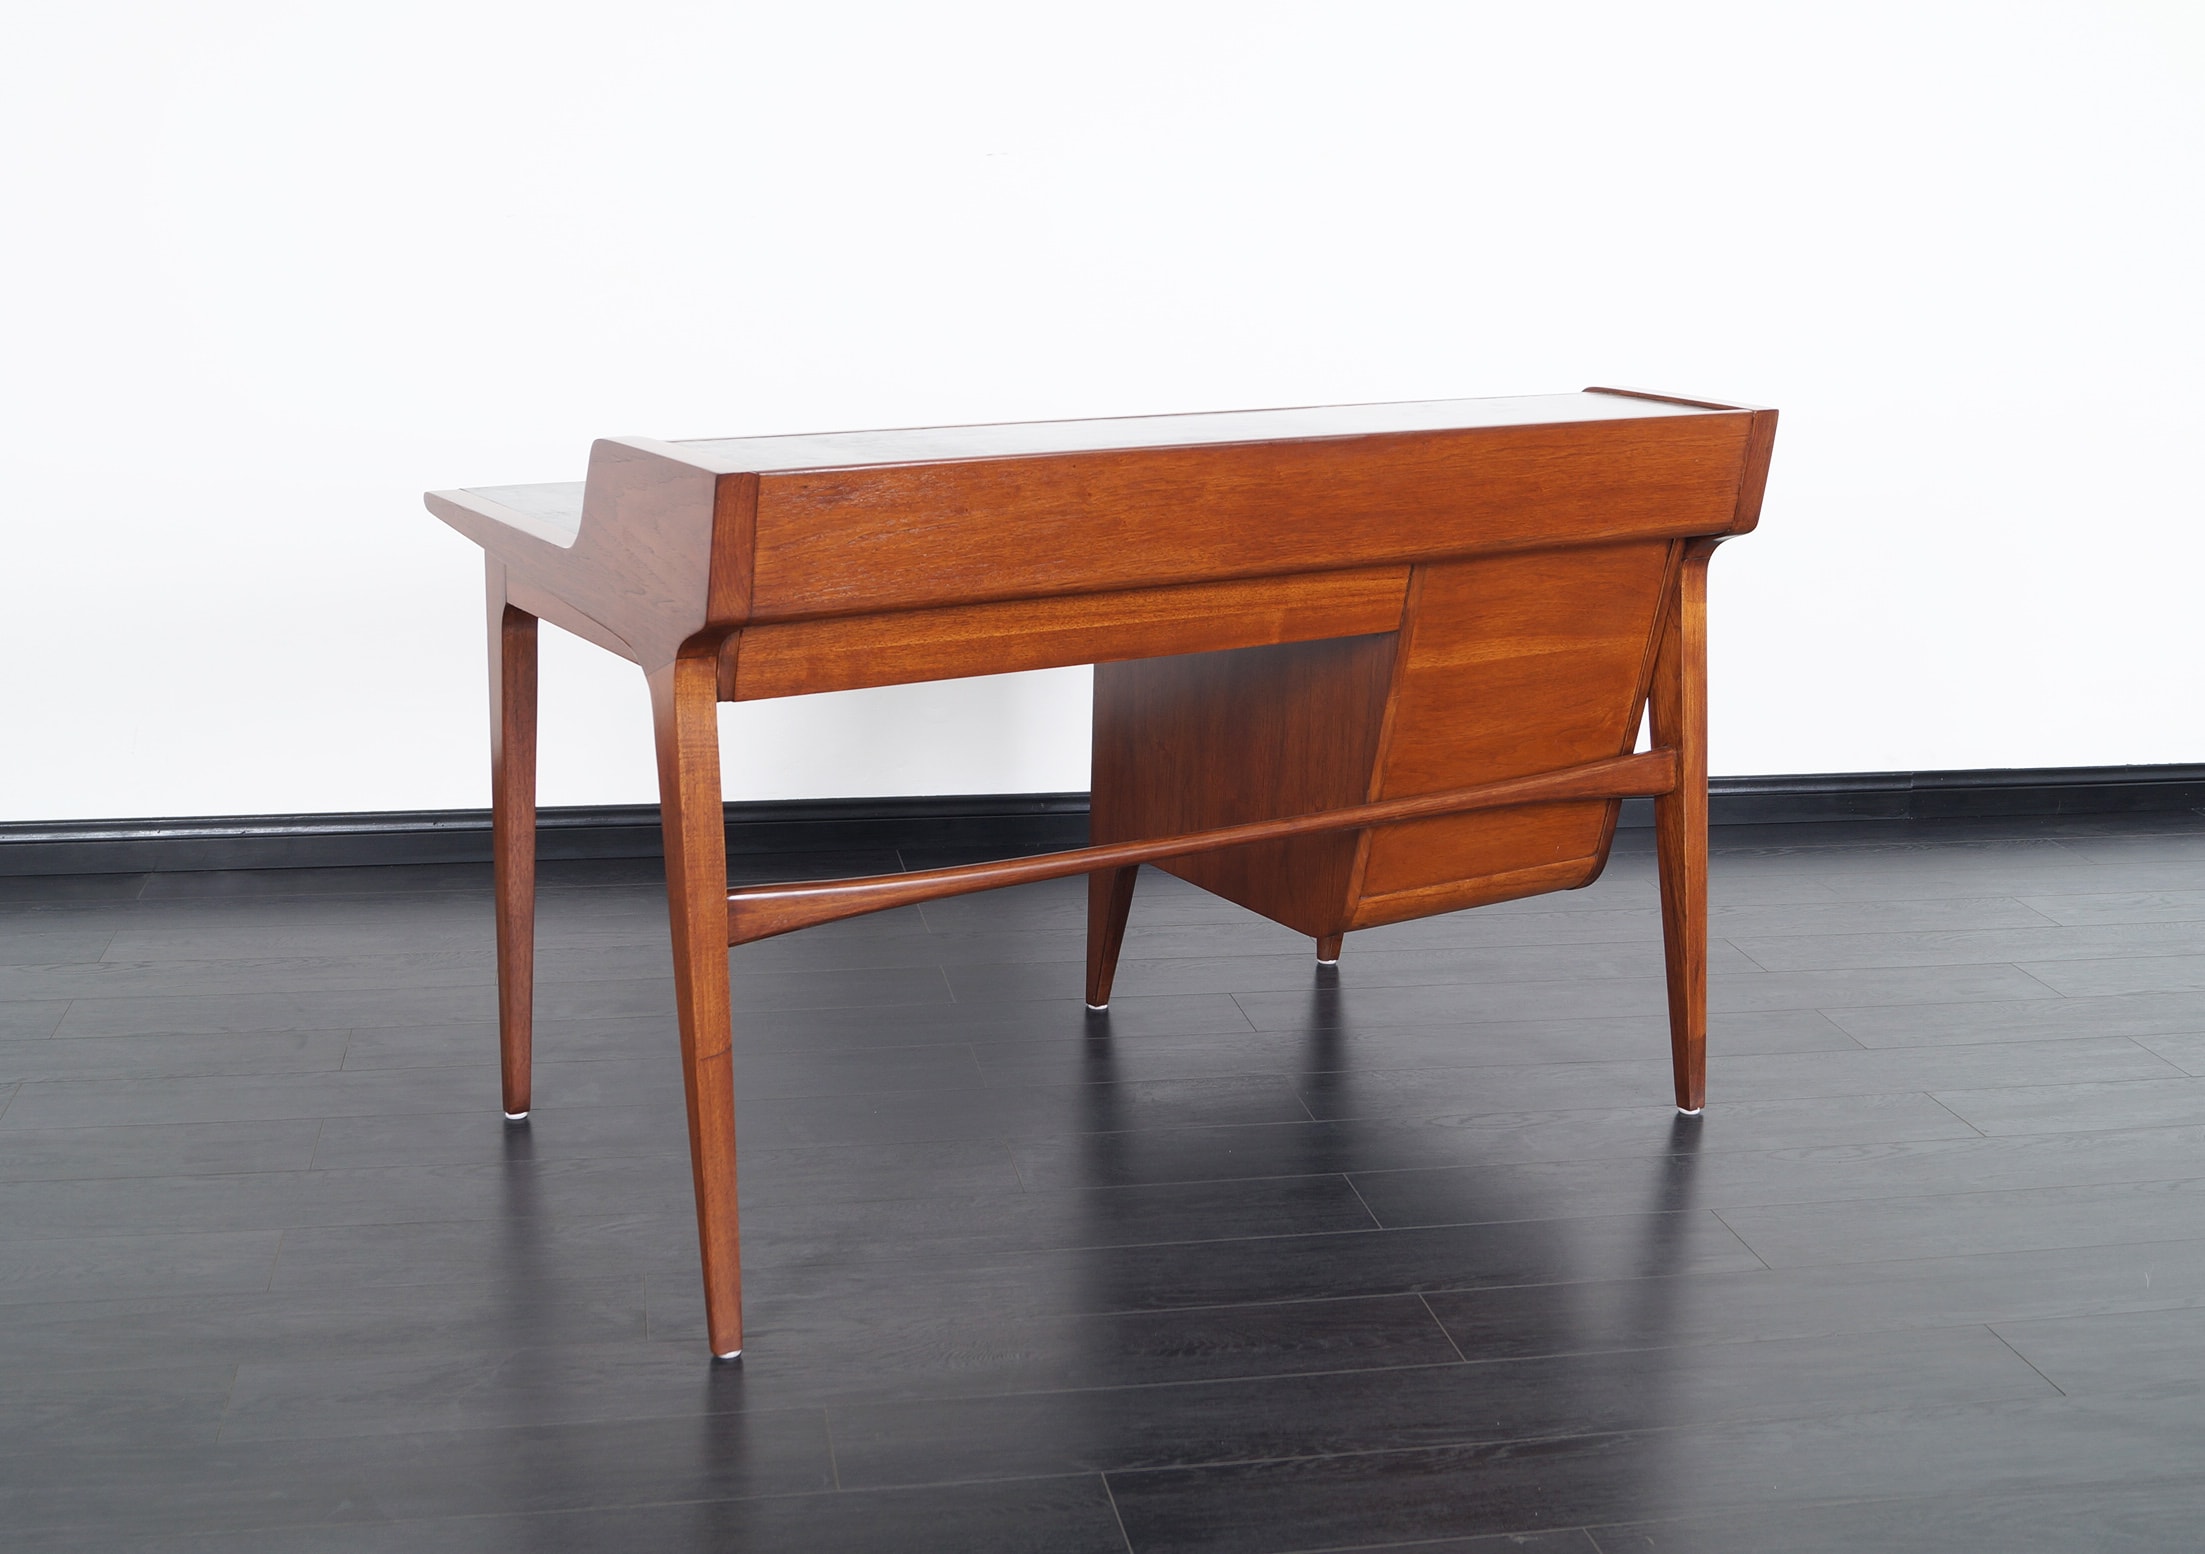 Vintage Drexel Desk by John Van Koert